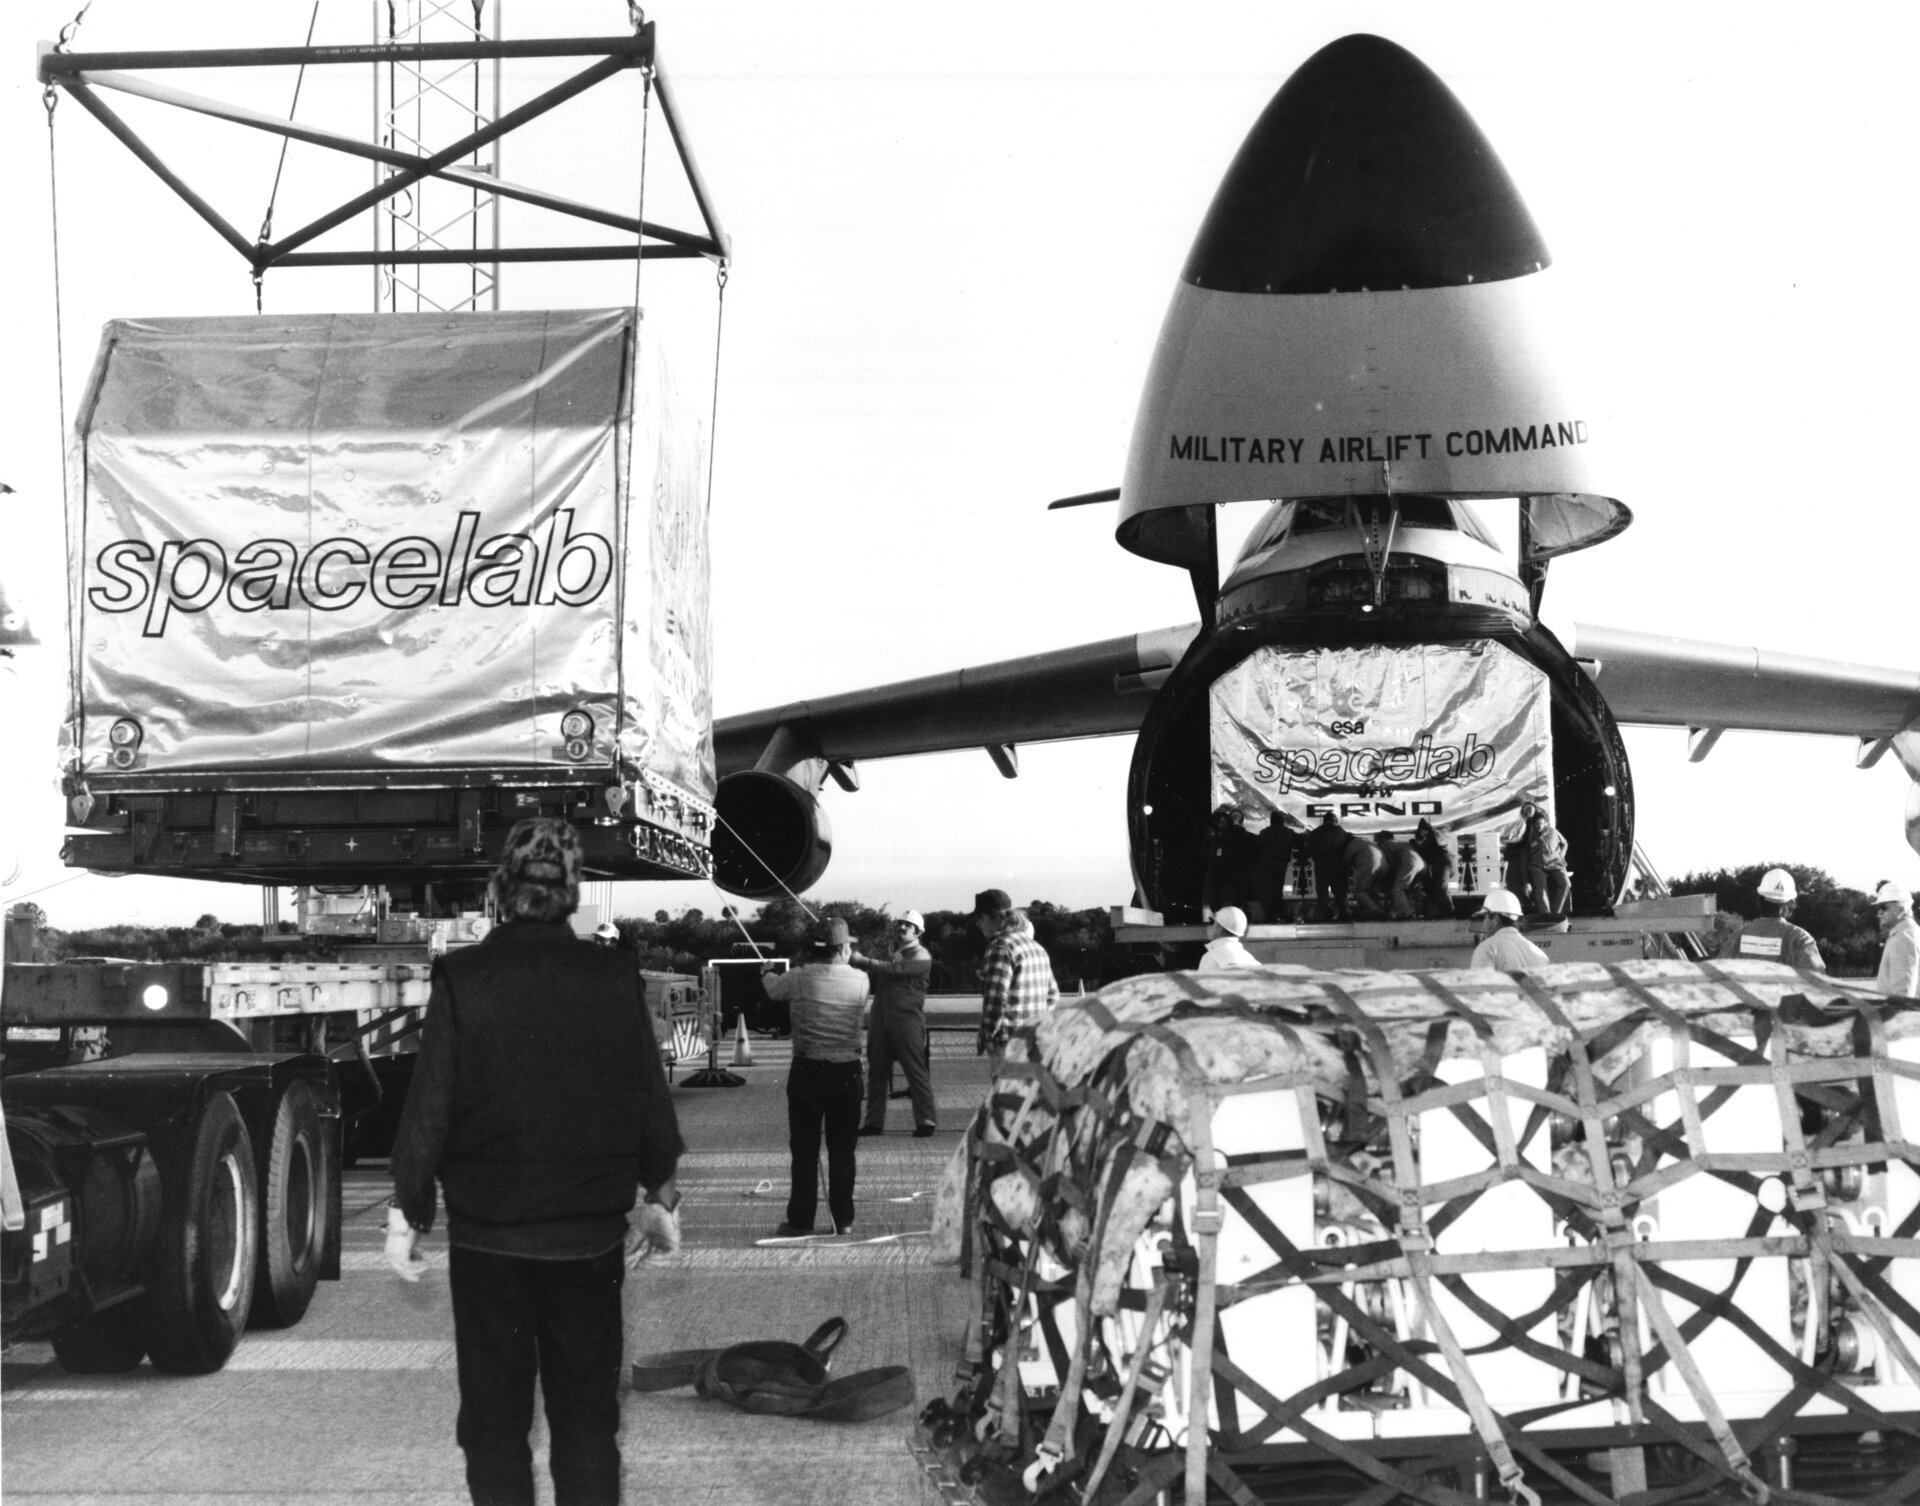 Spacelab delivery at KSC, December 1981